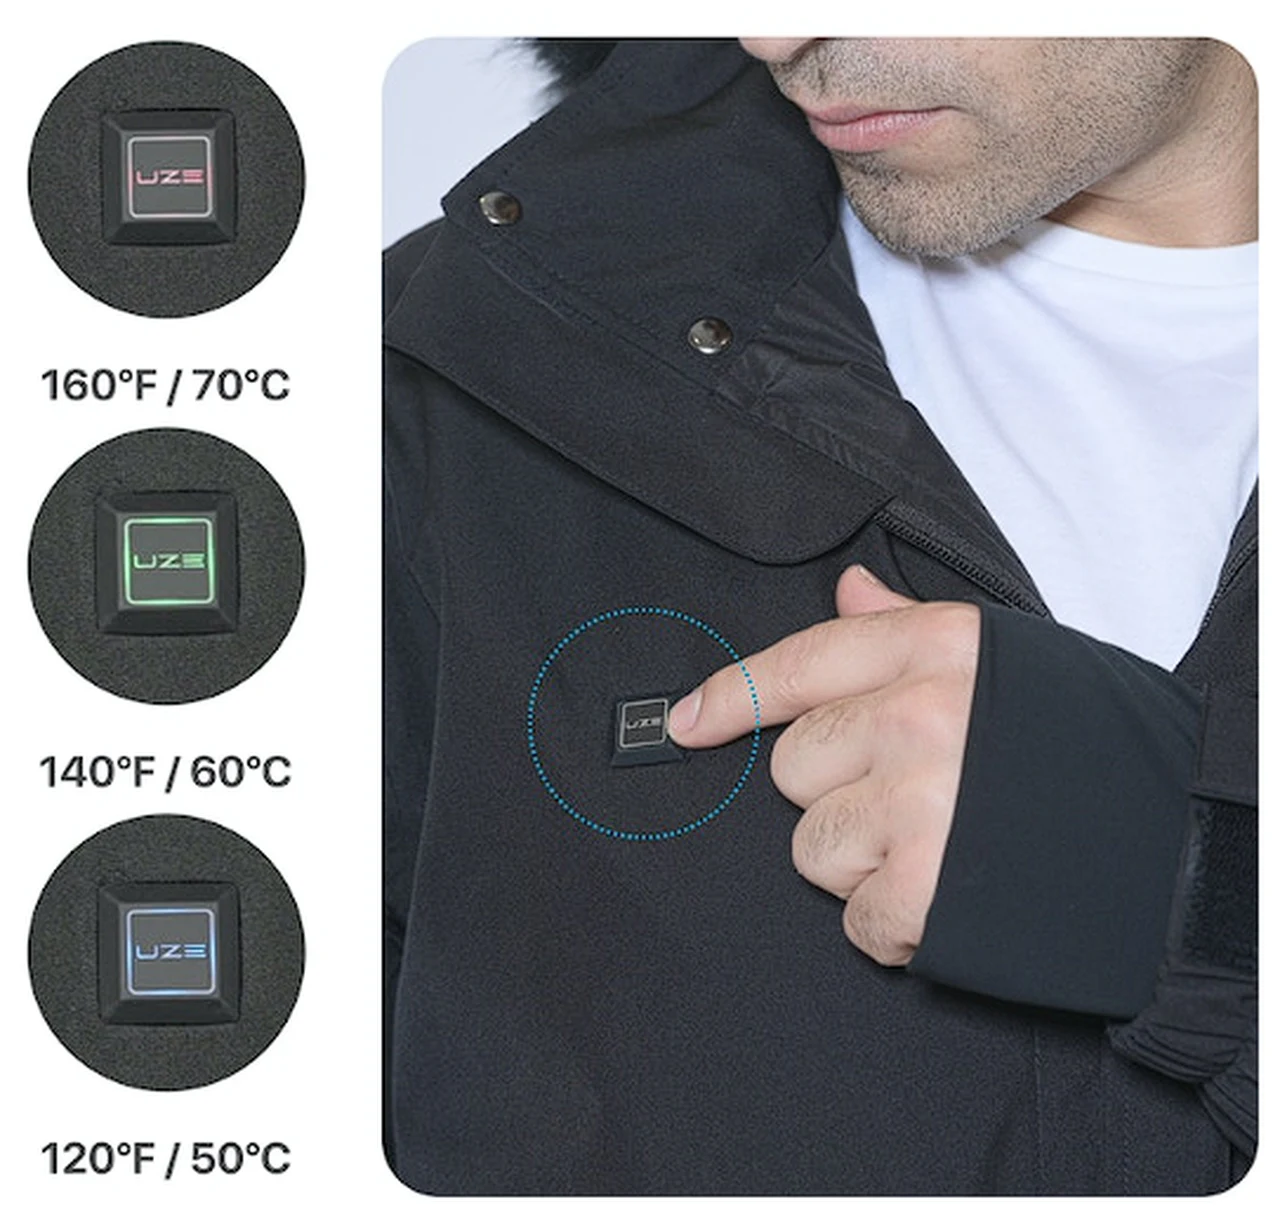 UZE heated jacket controls